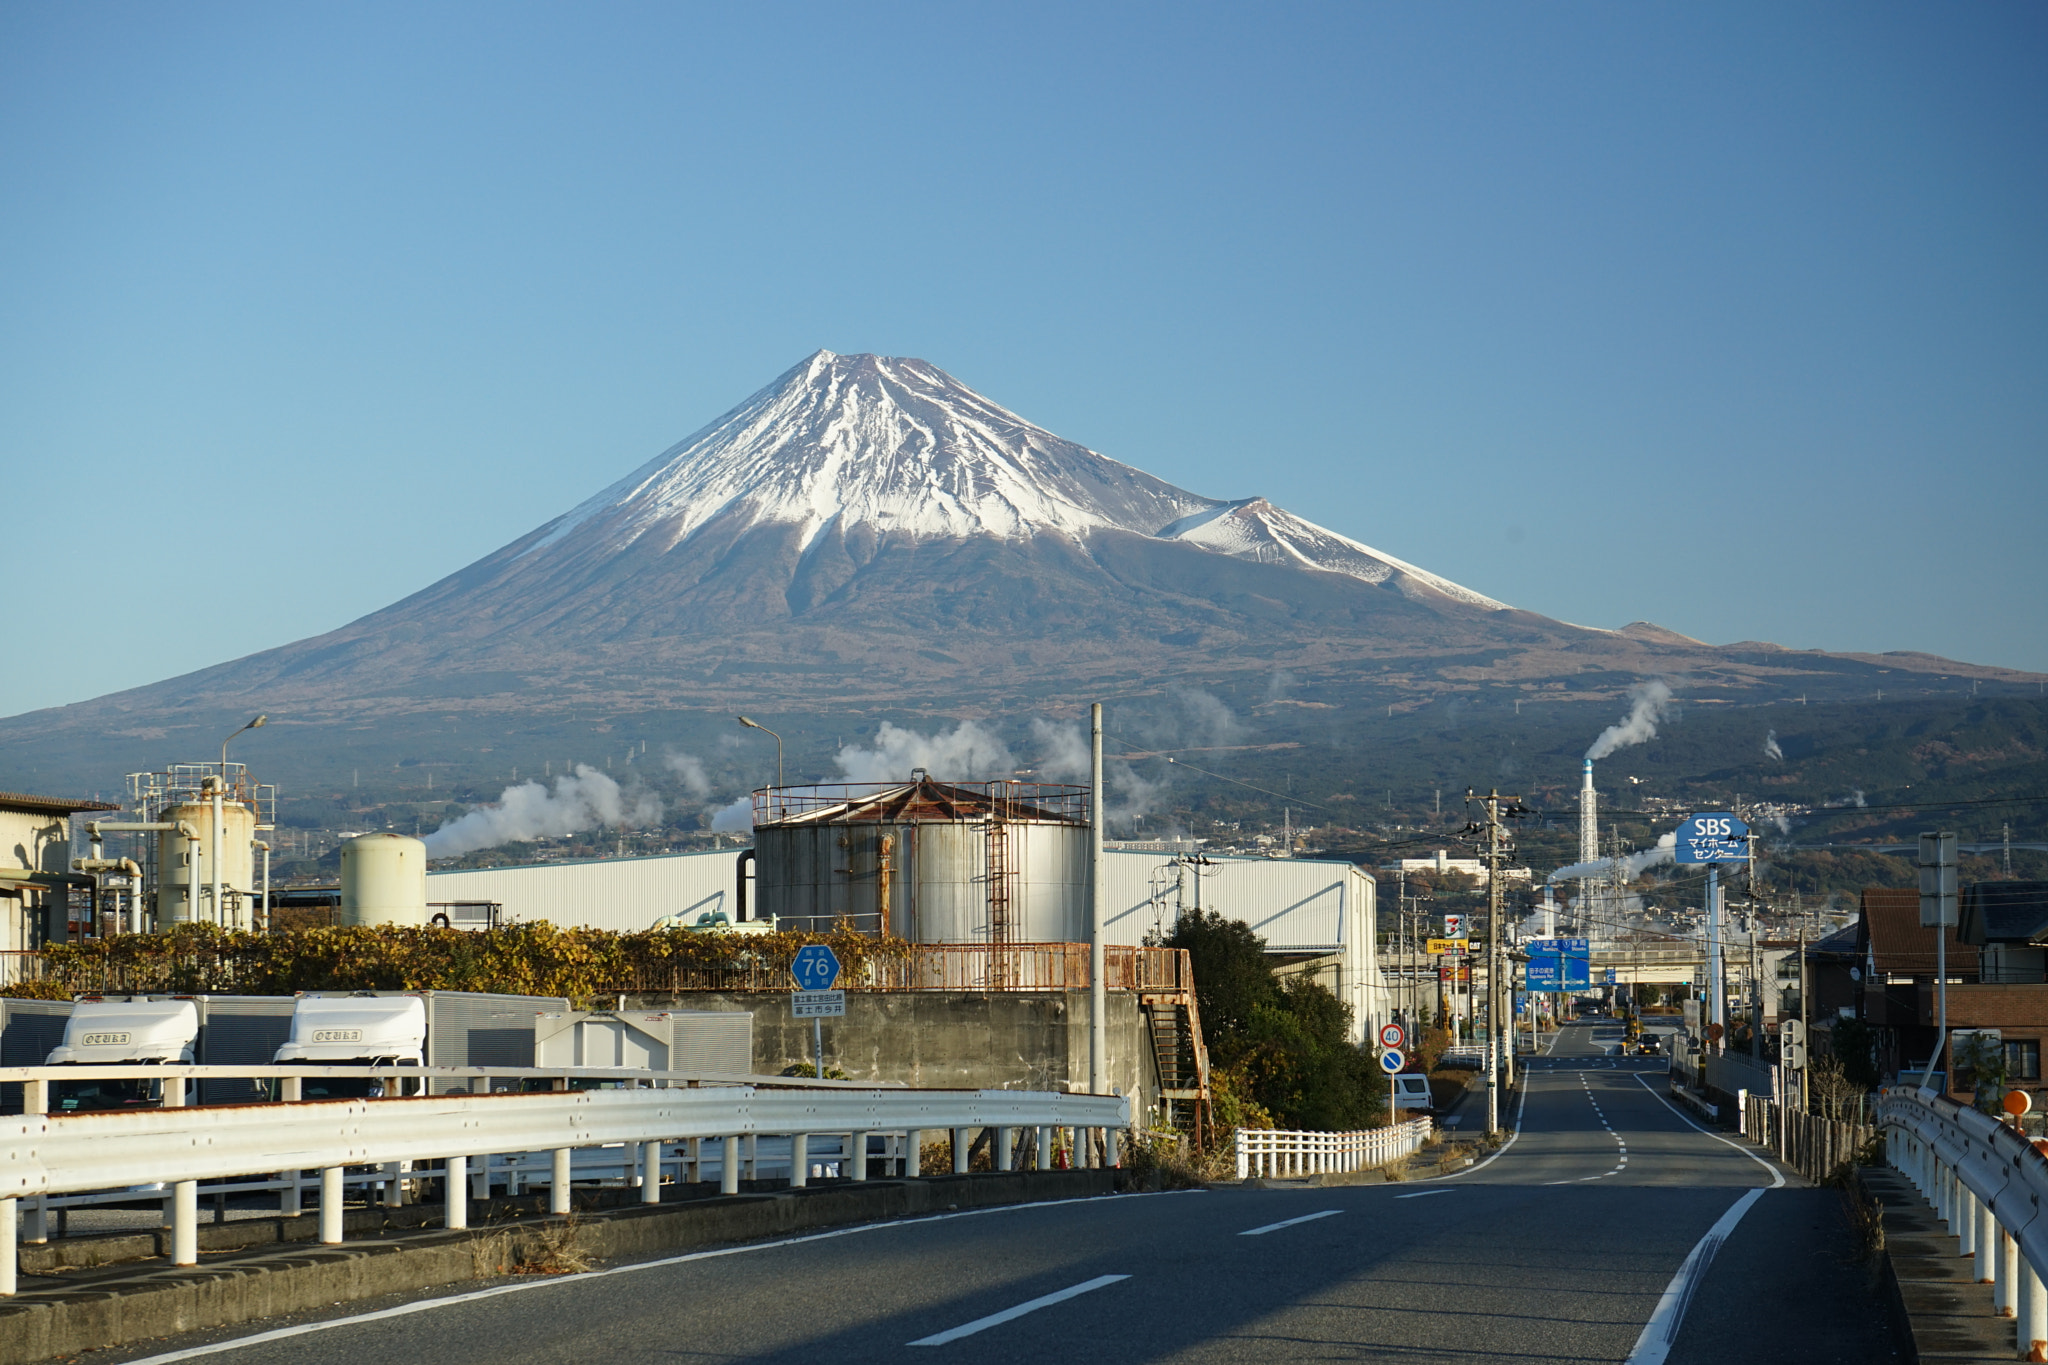 Mount.Fuji @ Small town